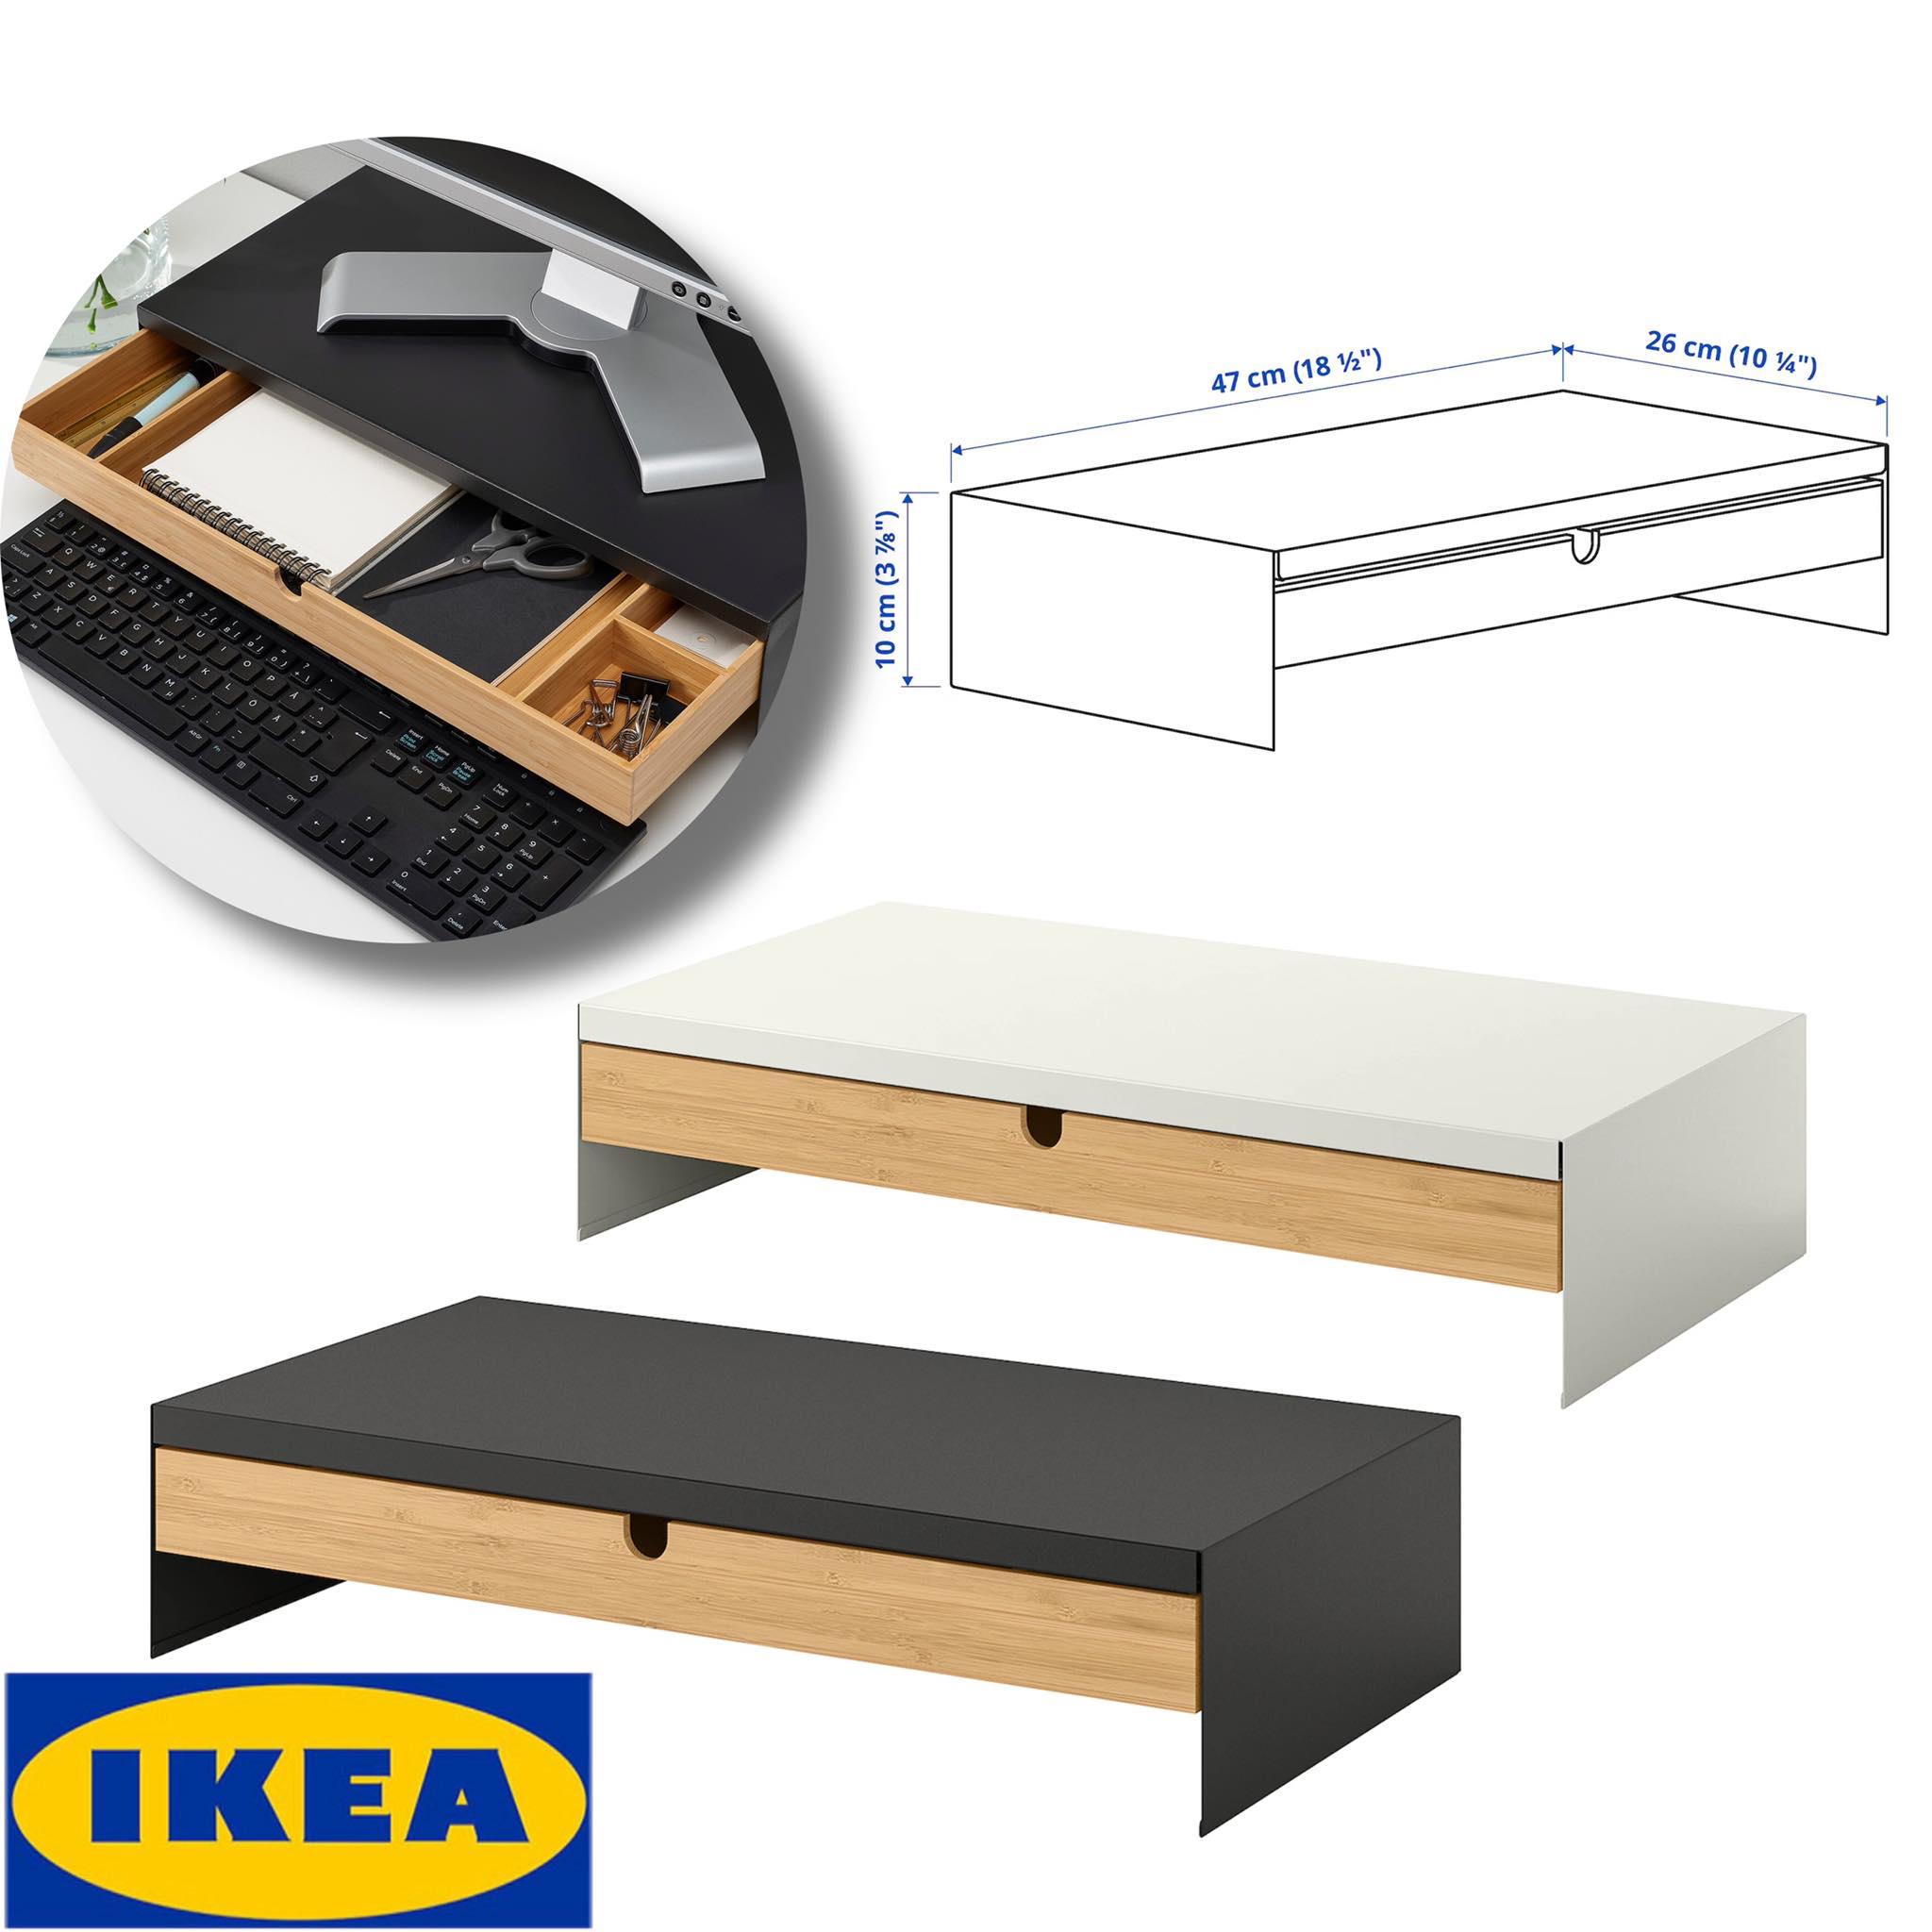 IKEA ของแท้ ELLOVEN เอลโลเวน ชั้นวางจอคอมพร้อมลิ้นชักเก็บของ, ขาว,สีแอนทราไซต์